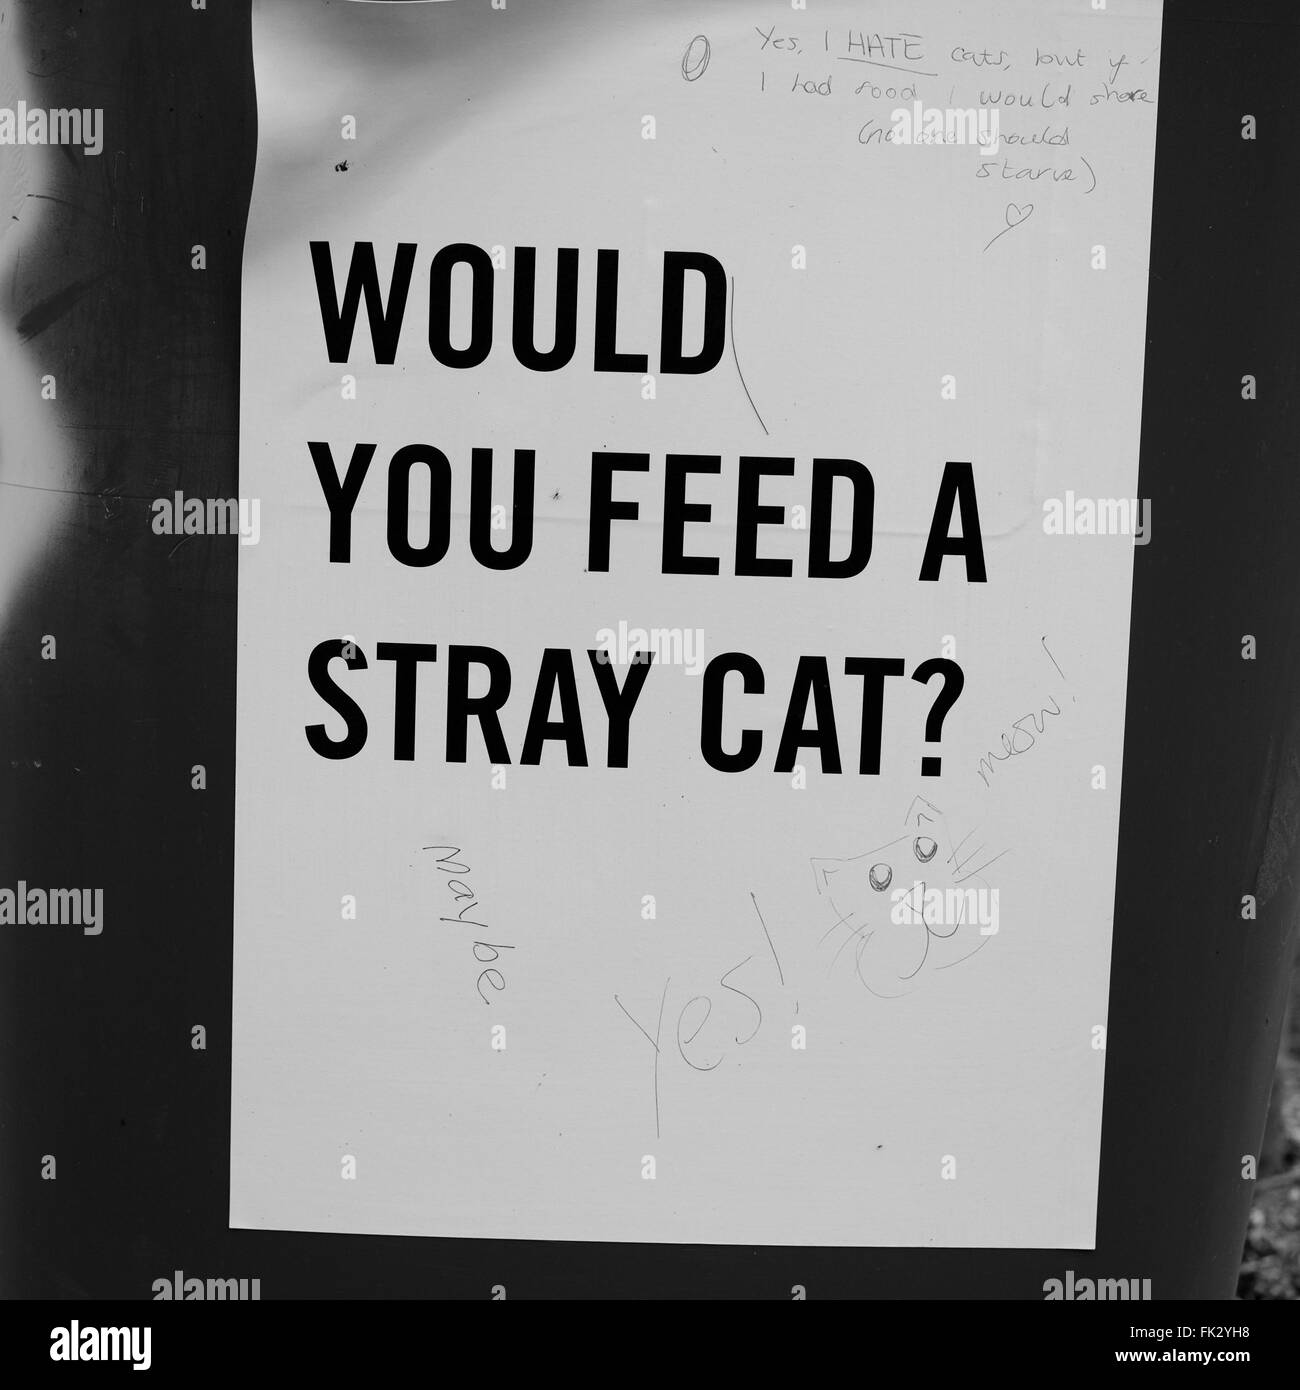 Uno di una serie di poster che zampilla intorno a Falmouth evidenziando il dramma dei senzatetto in forma di domande Foto Stock